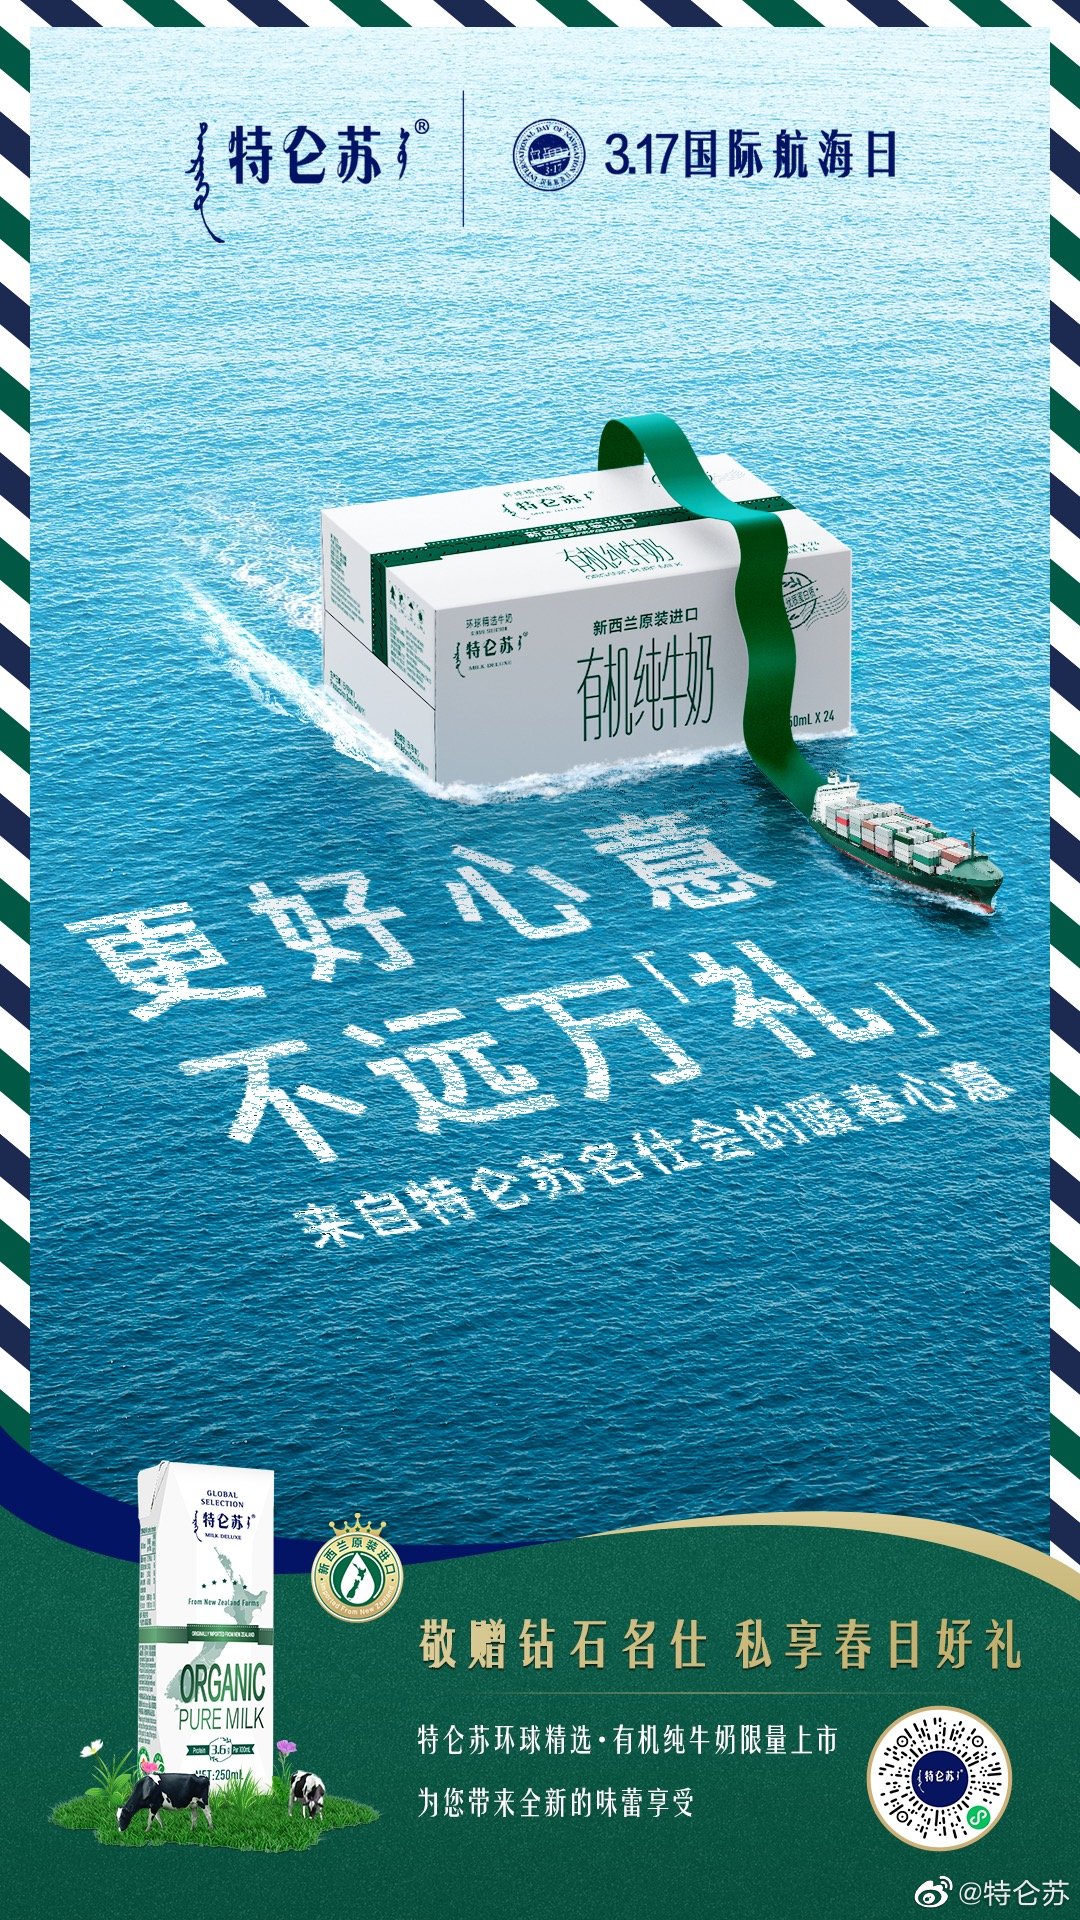 特仑苏推出「国际航海日」纪念新品